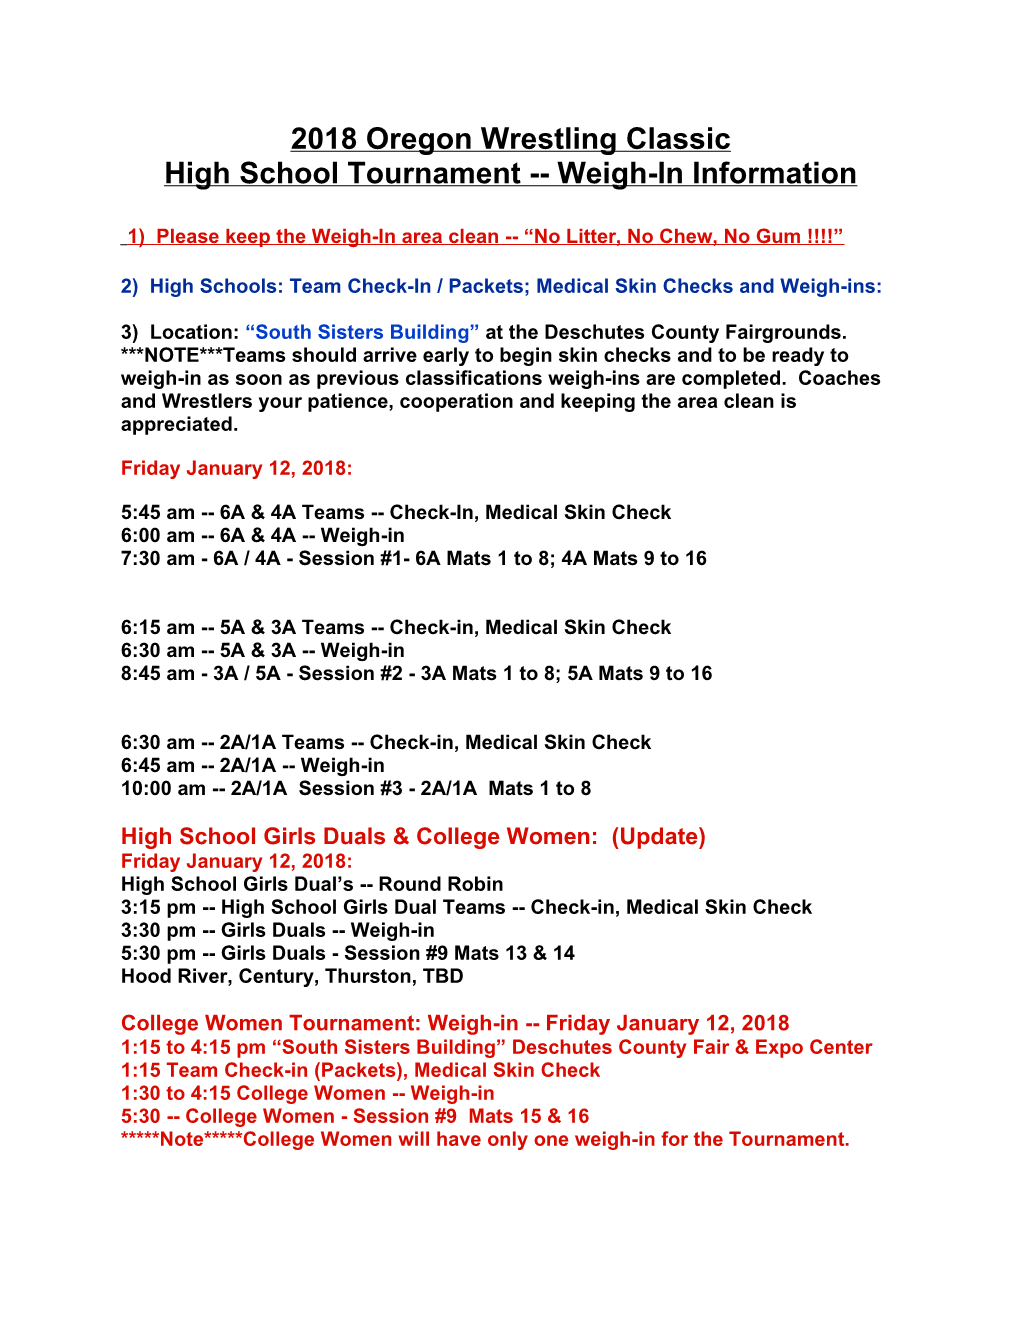 High School Tournament Weigh-In Information